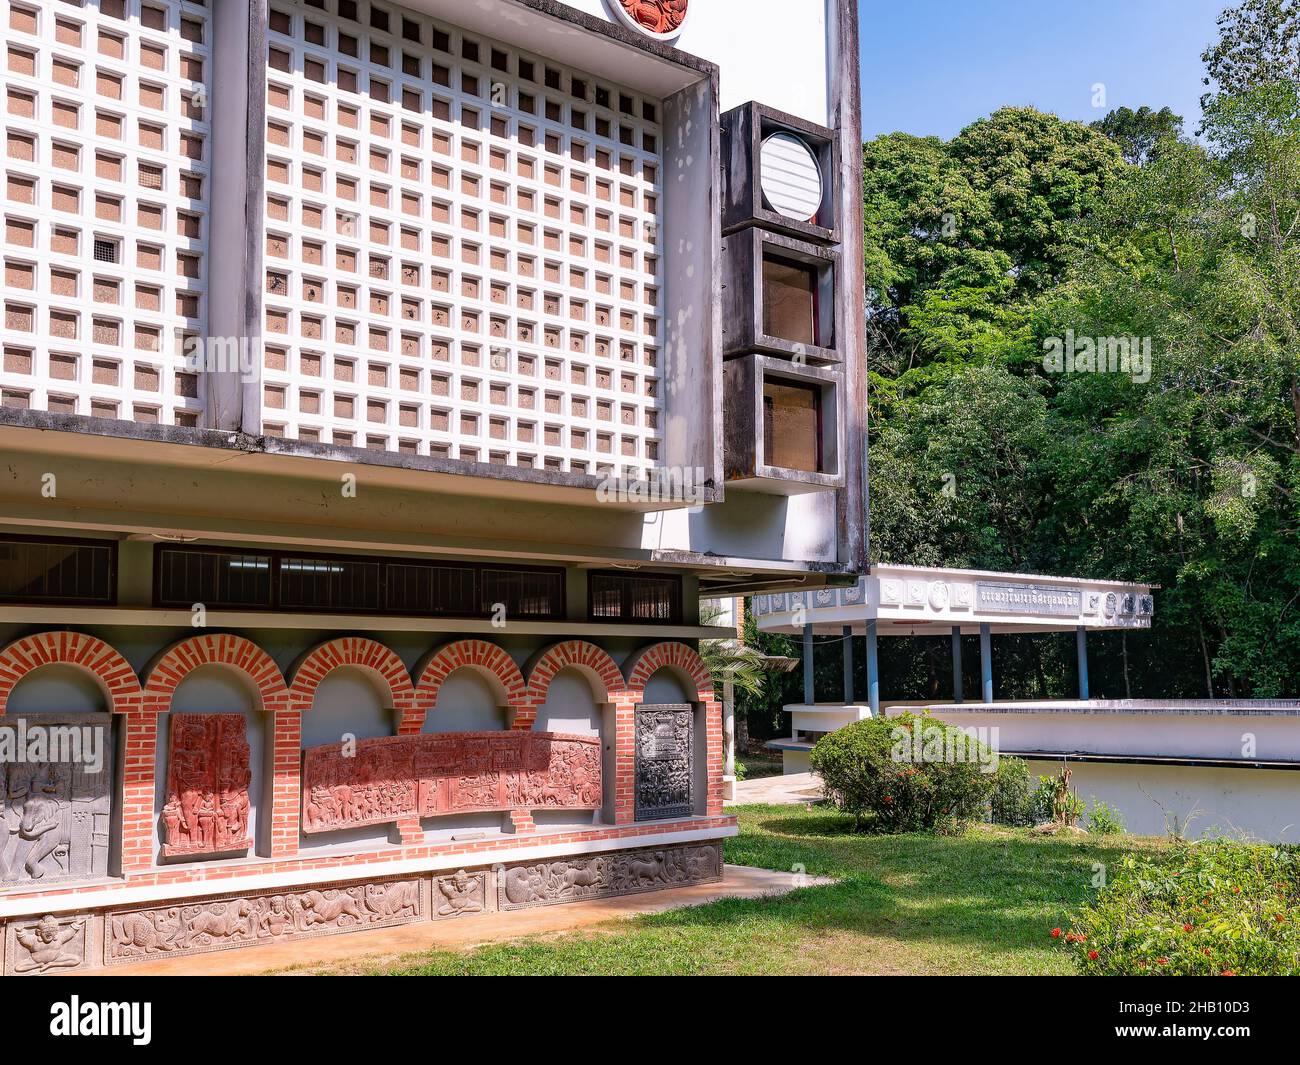 Dettaglio del teatro spirituale di Wat Suan Mokkh nella provincia di Surat Thani in Thailandia. Wat Suan Mokkh è stato fondato nel 1932 da Buddadasa Bhikkh Foto Stock